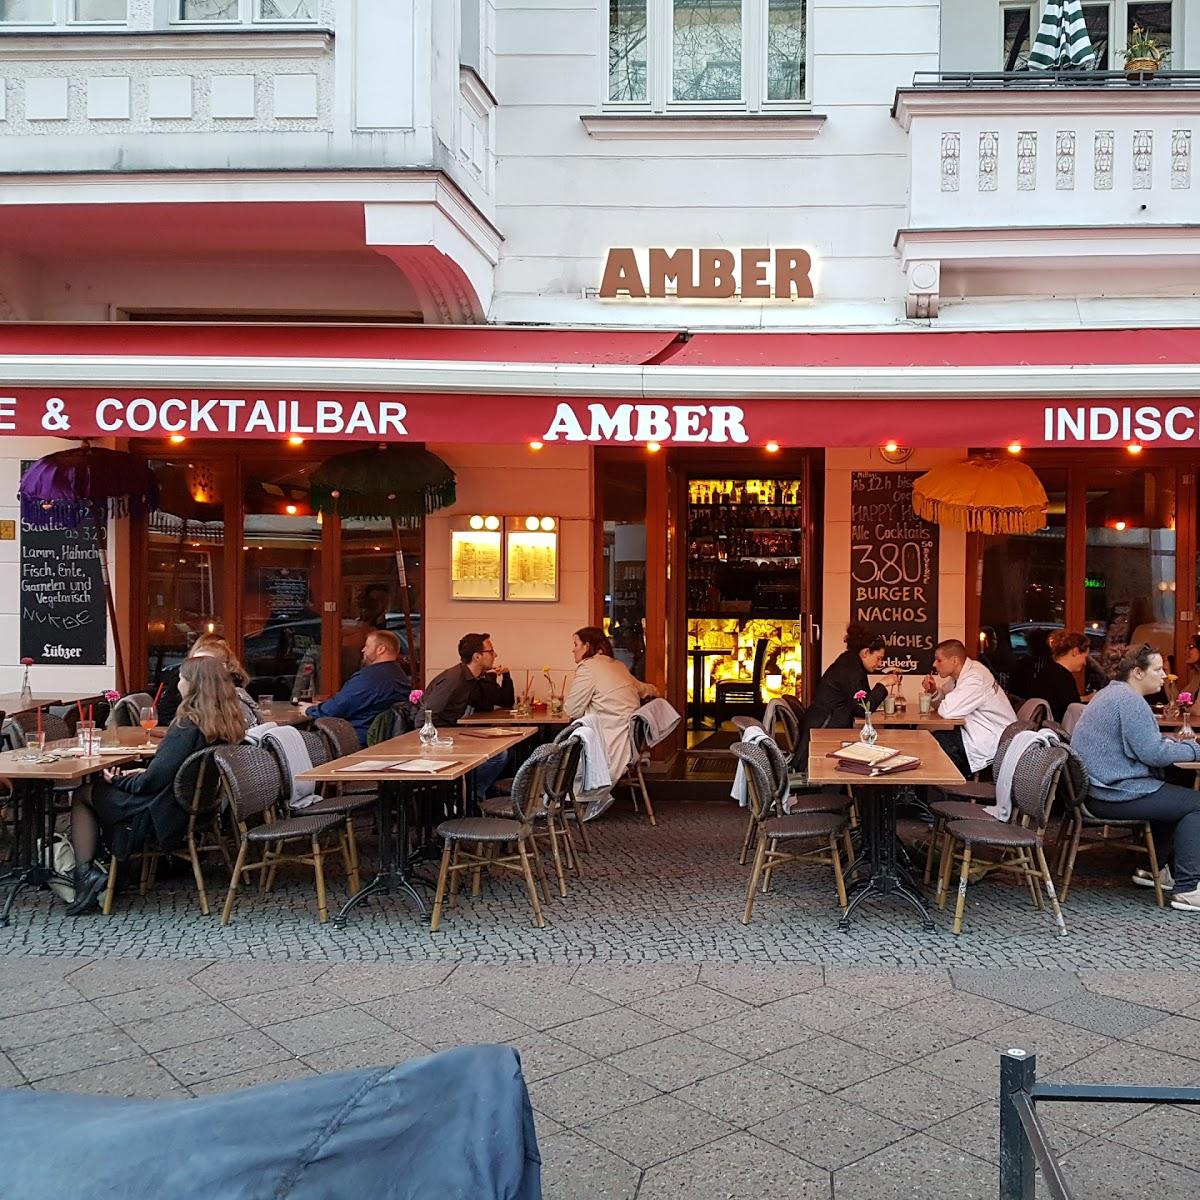 Restaurant "Amber" in Berlin